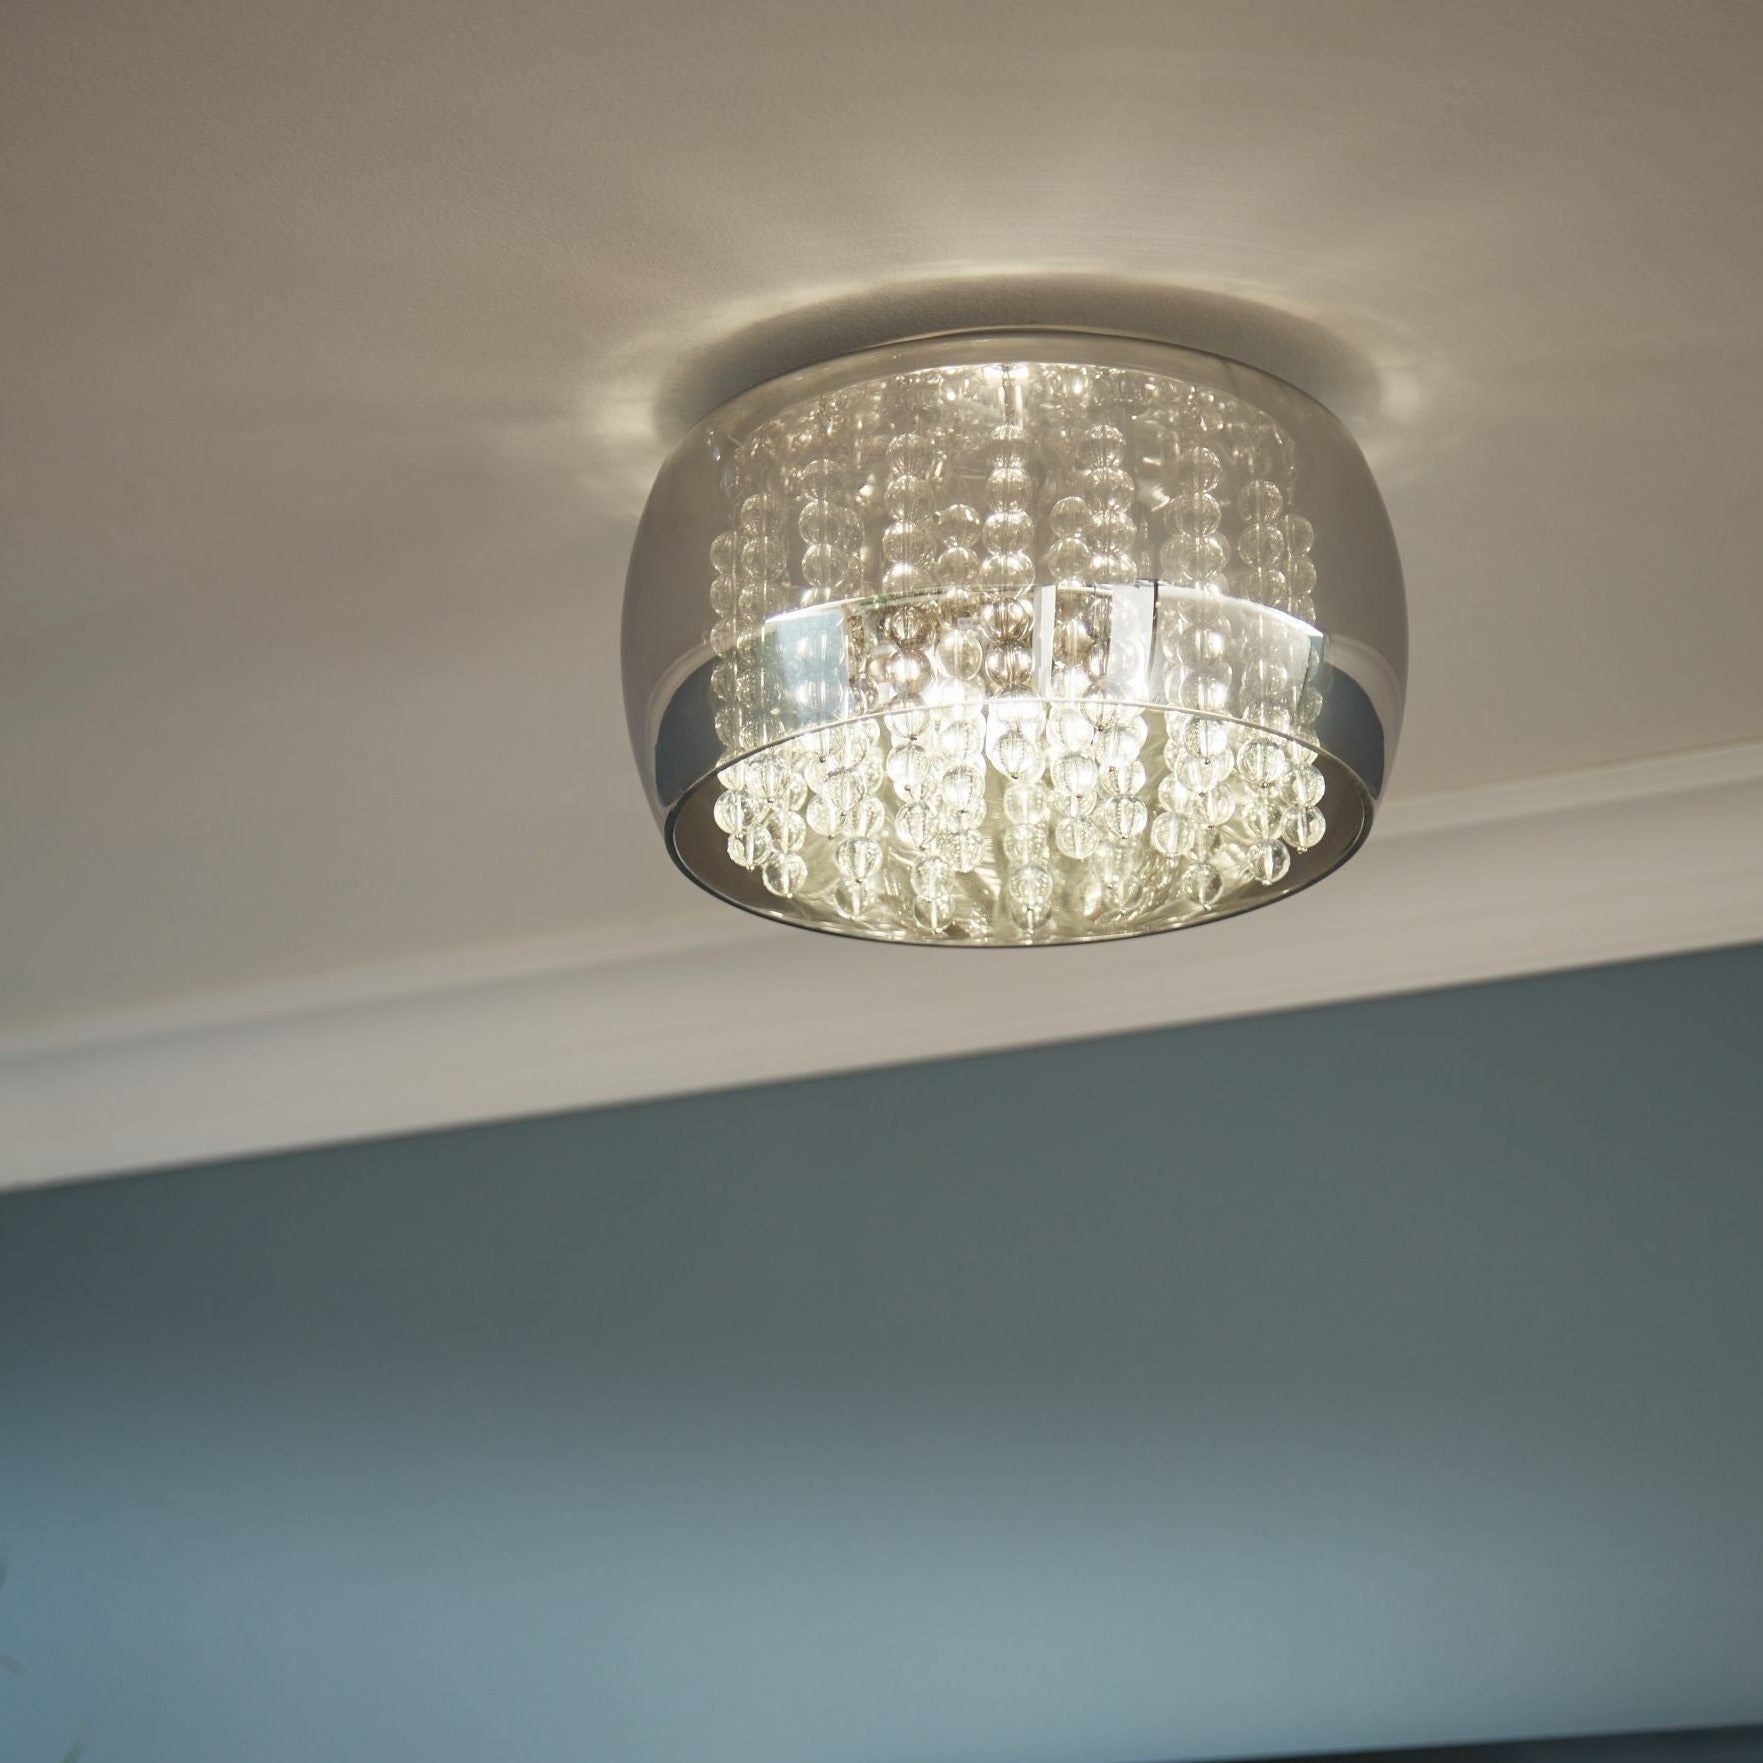 John Lewis & Partners Stella Semi Flush Ceiling Light, Black Chrome